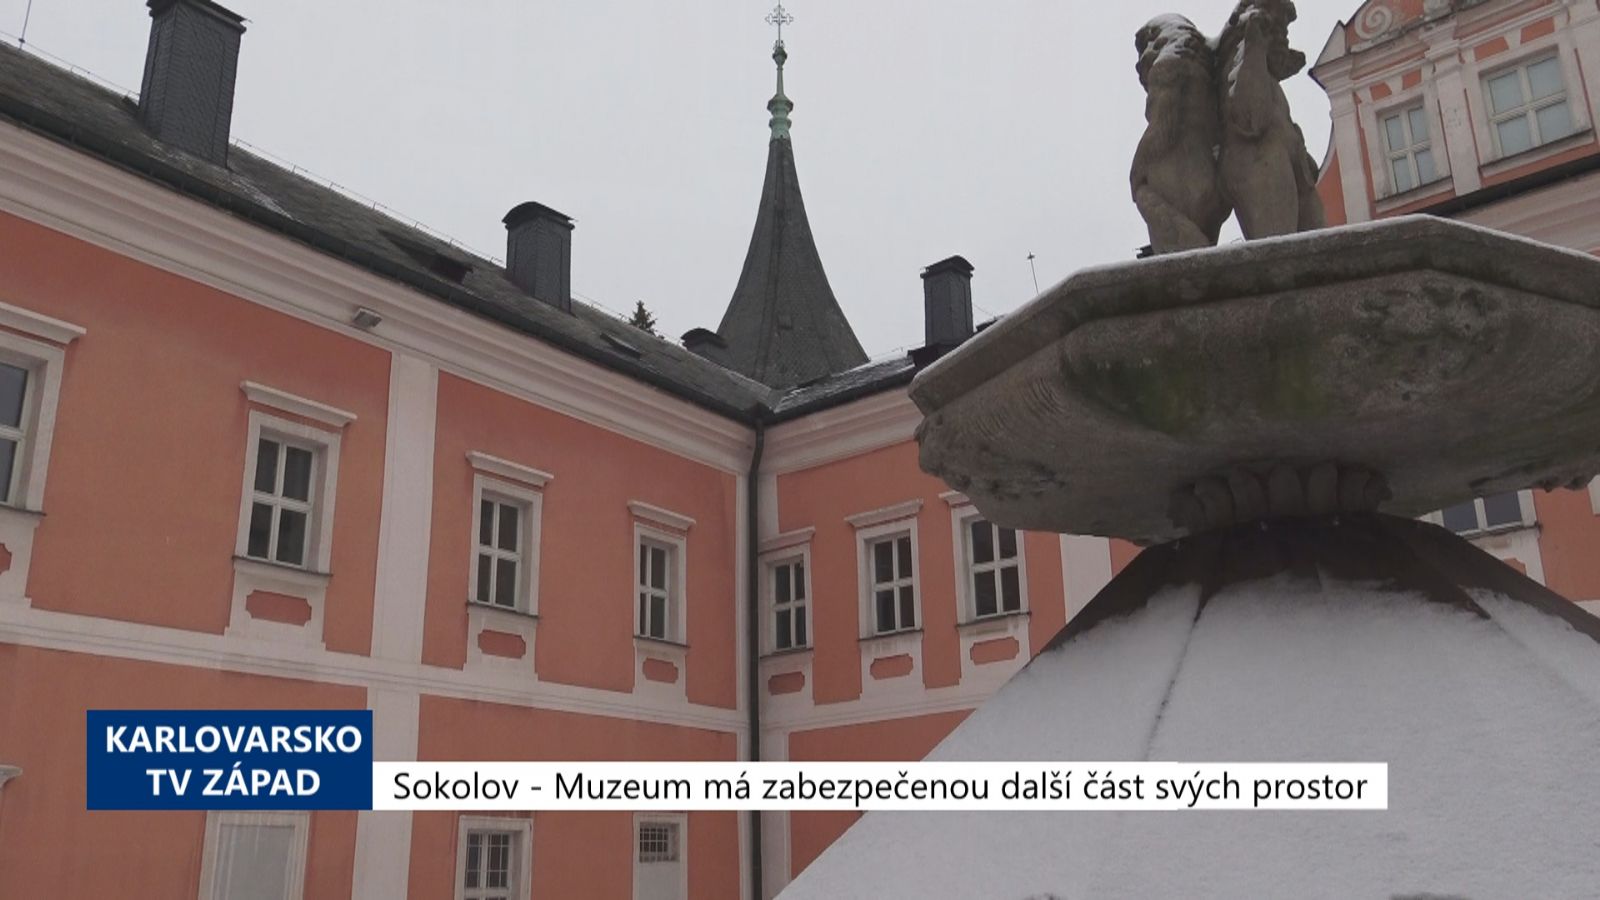 Sokolov: Muzeum má zabezpečenou další část svých prostor (TV Západ)